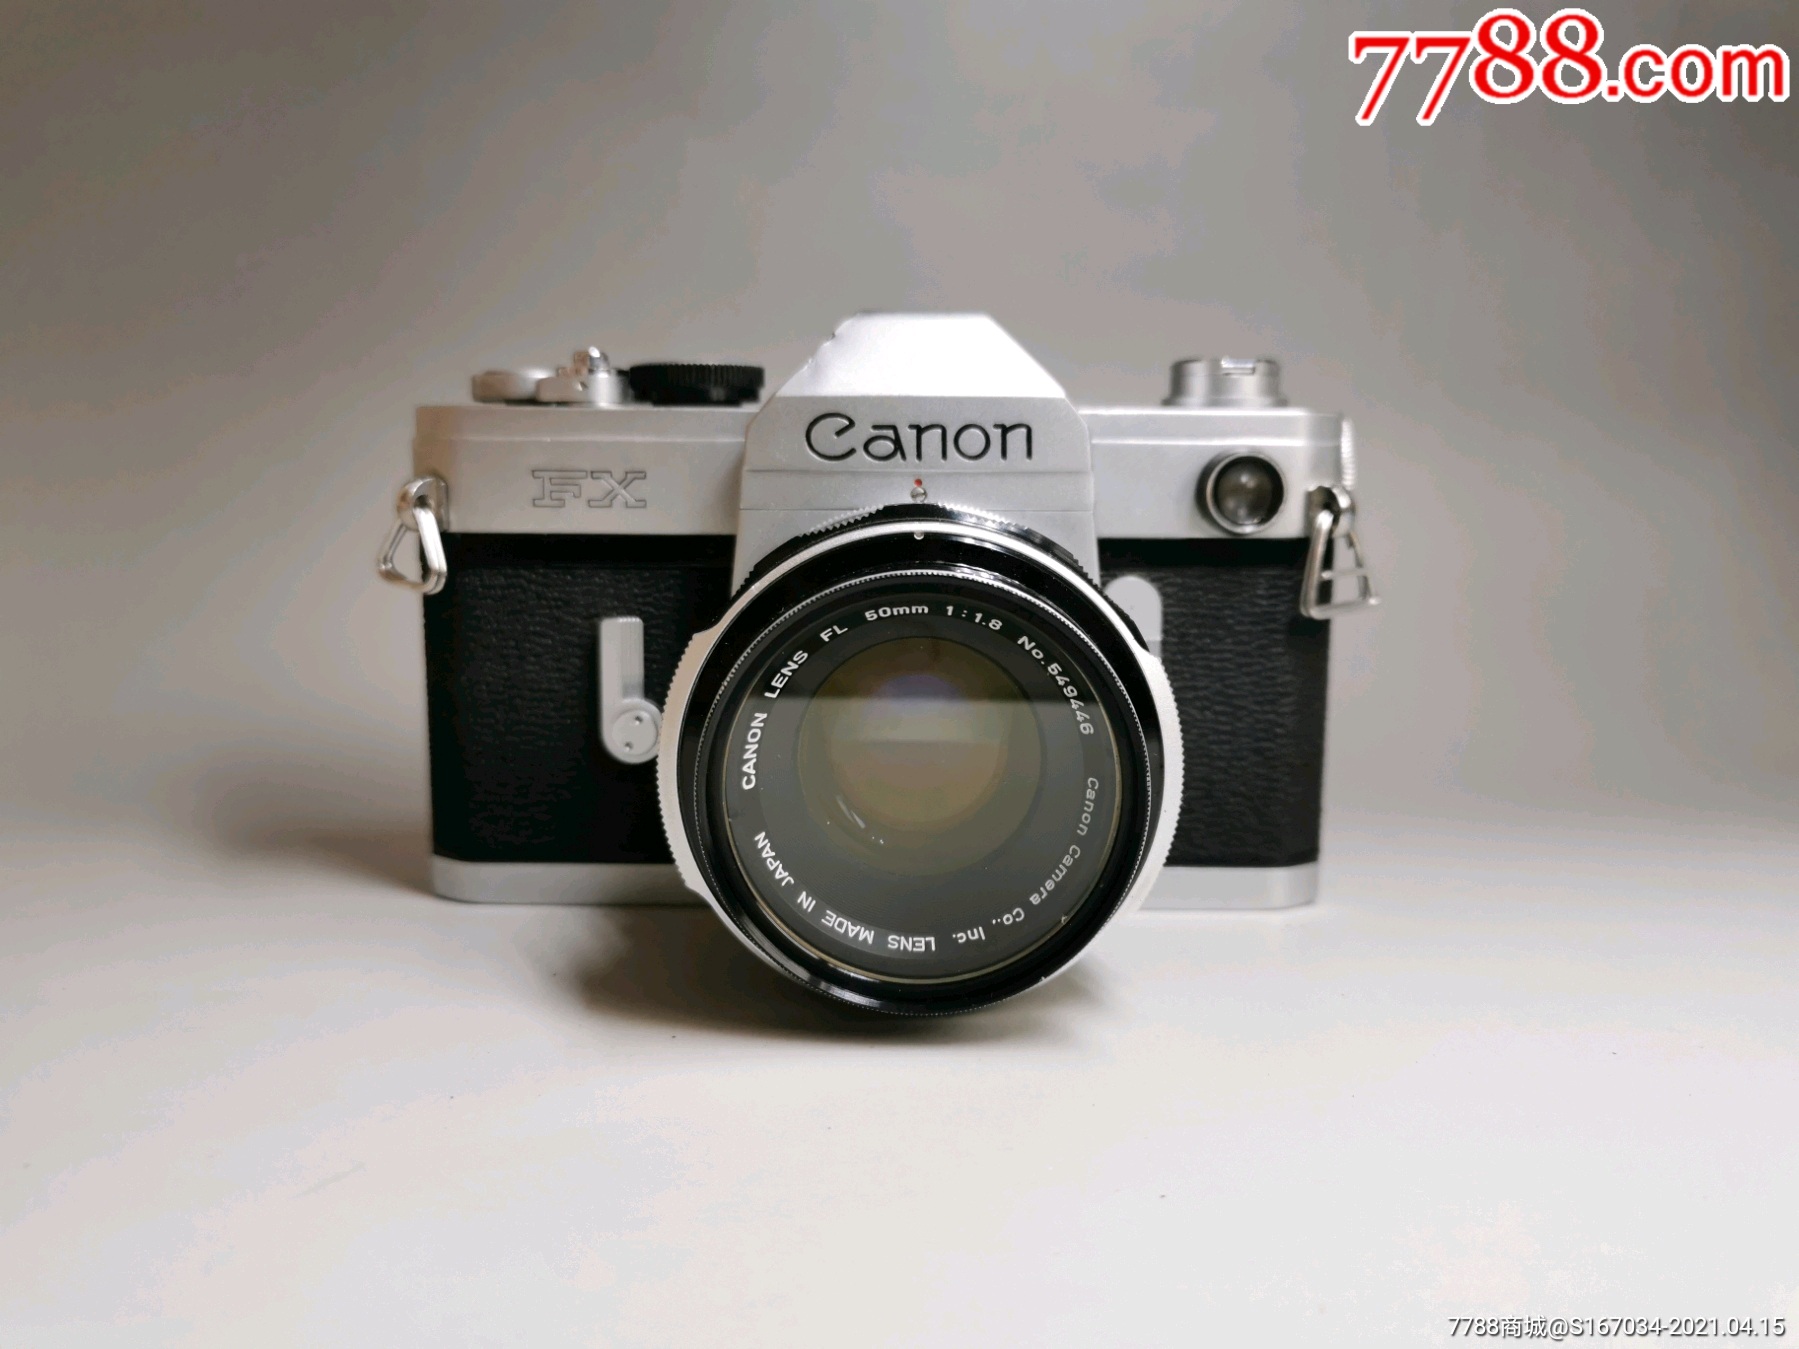 佳能canonfx相机佳能canonfx胶片相机成色见图片仓干净